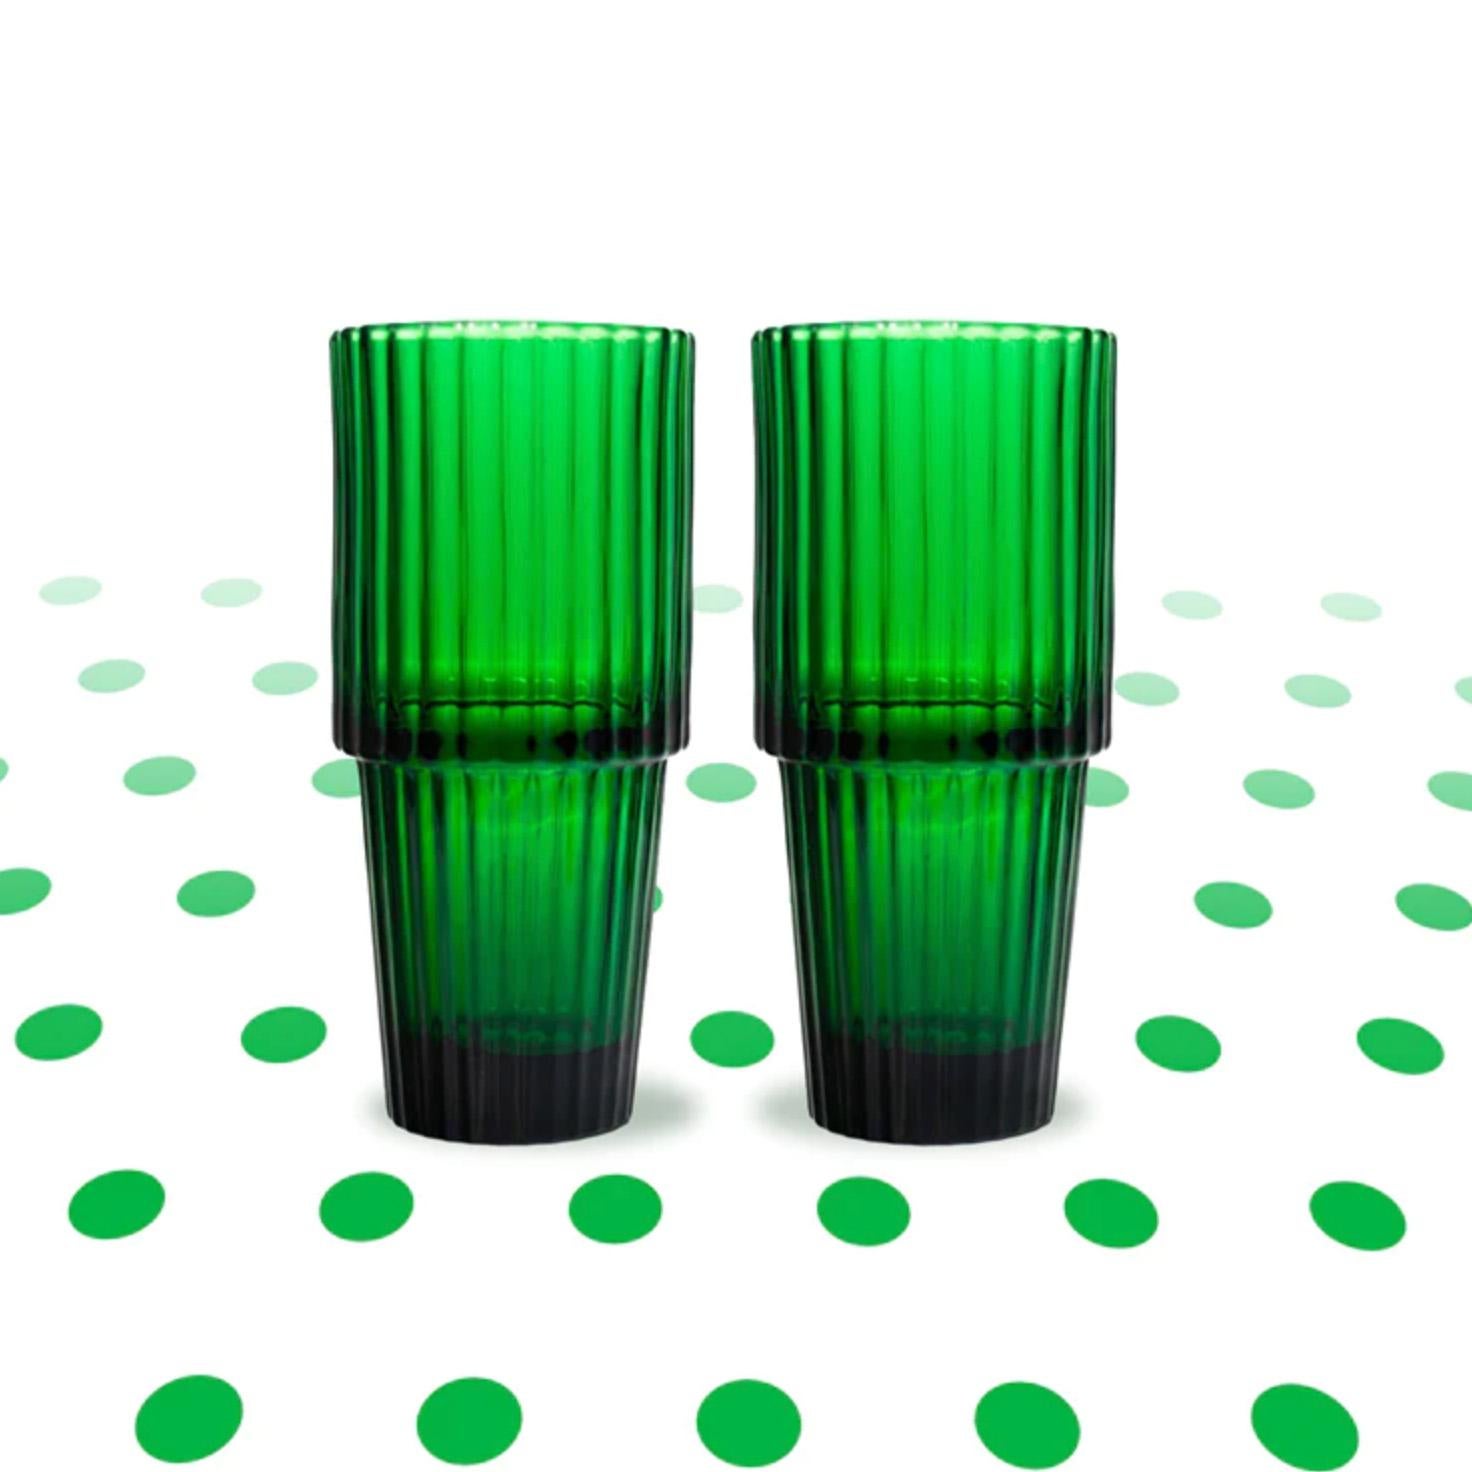 Verre conique vert de DOIY

Fabriqué en Europe
Verre texturé
Mesures : 2.5 x 5.75 in / chaque

Un set de 2 grands verres nervurés qui ajouteront un style intemporel à votre collection d'objets d'intérieur. 



Toutes les ventes sont